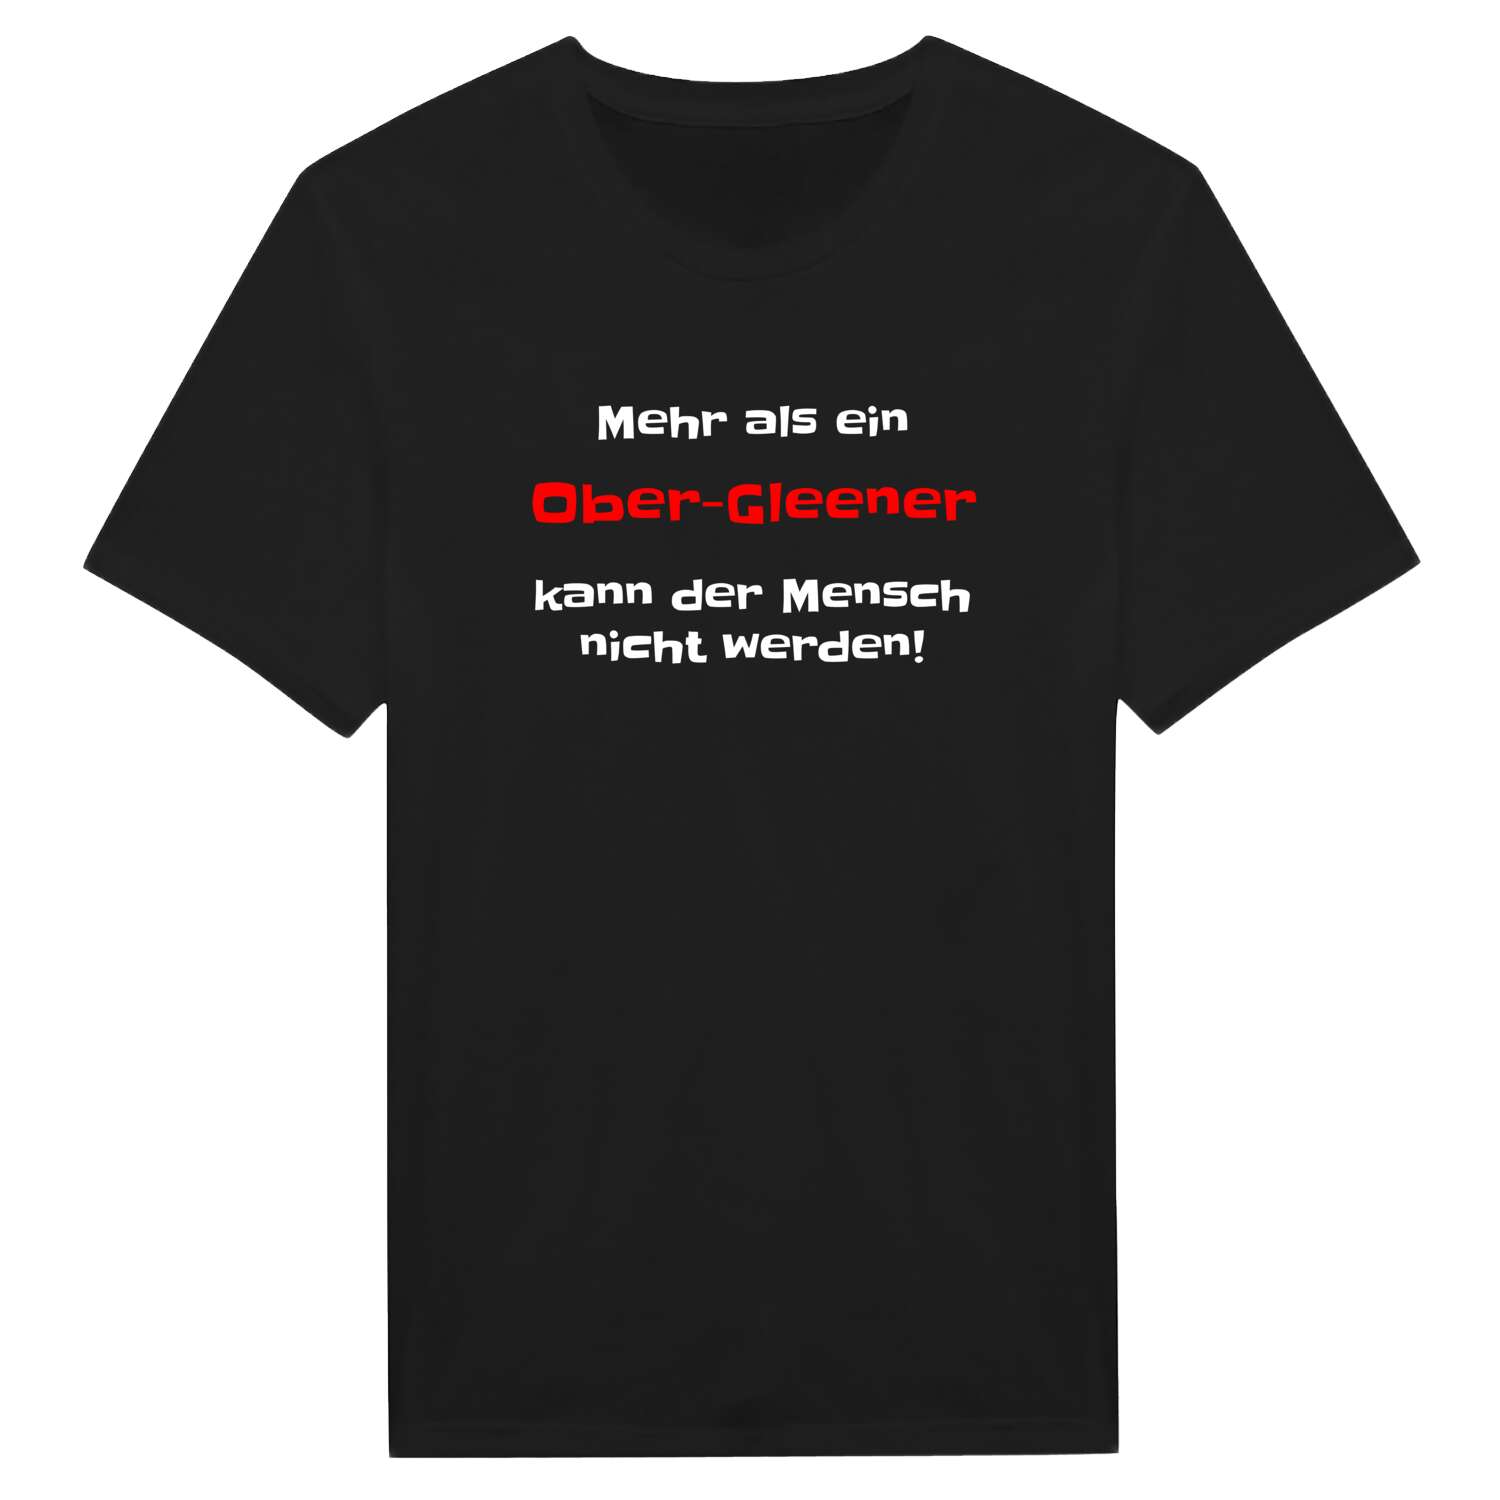 Ober-Gleen T-Shirt »Mehr als ein«